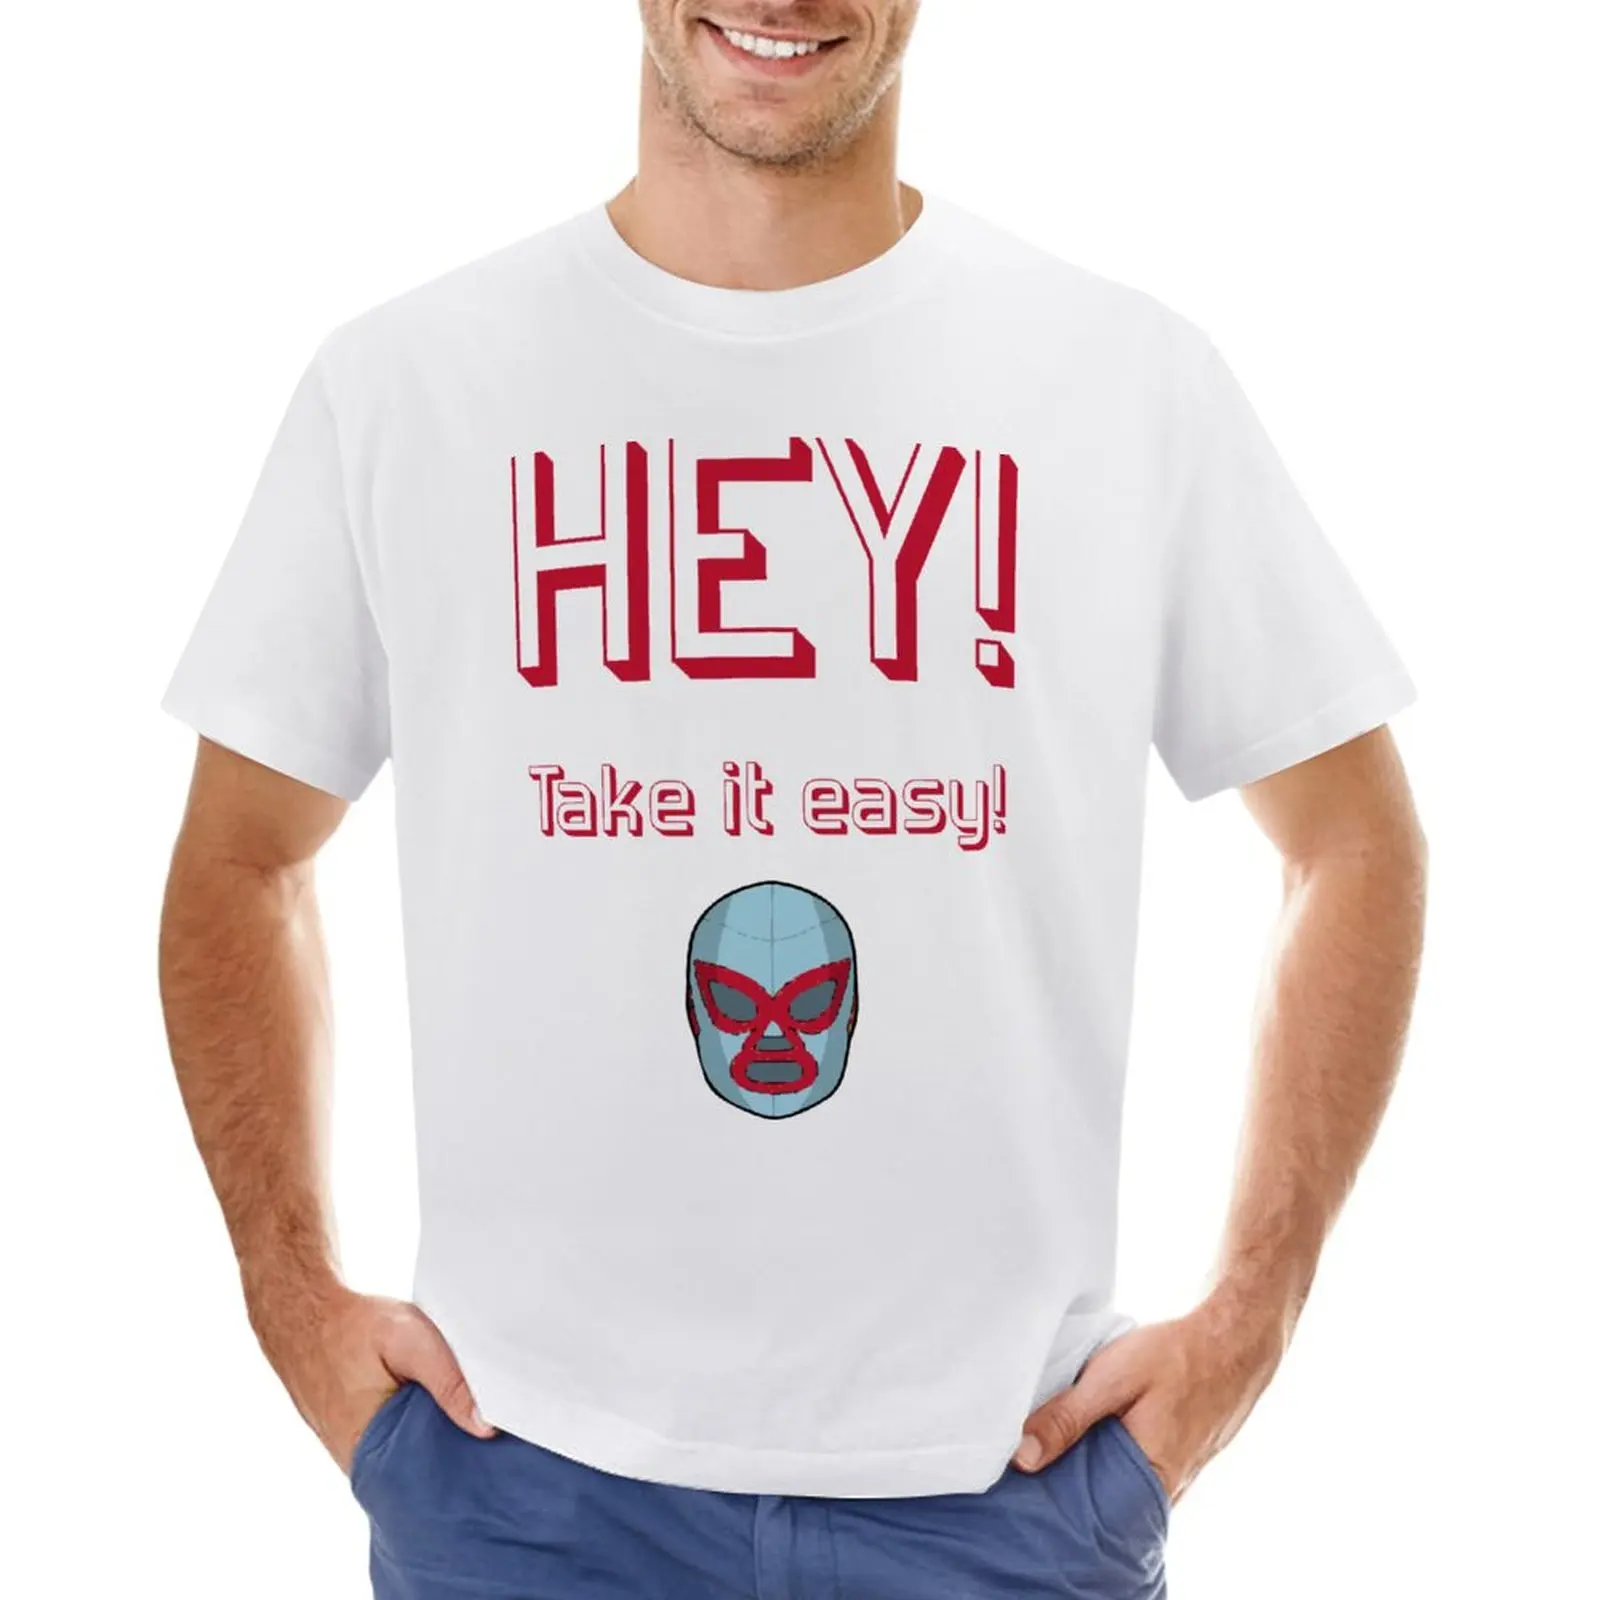 

Heytakeiteasy футболка для мальчиков с принтом животных, большие размеры, таможенная футболка для мужчин